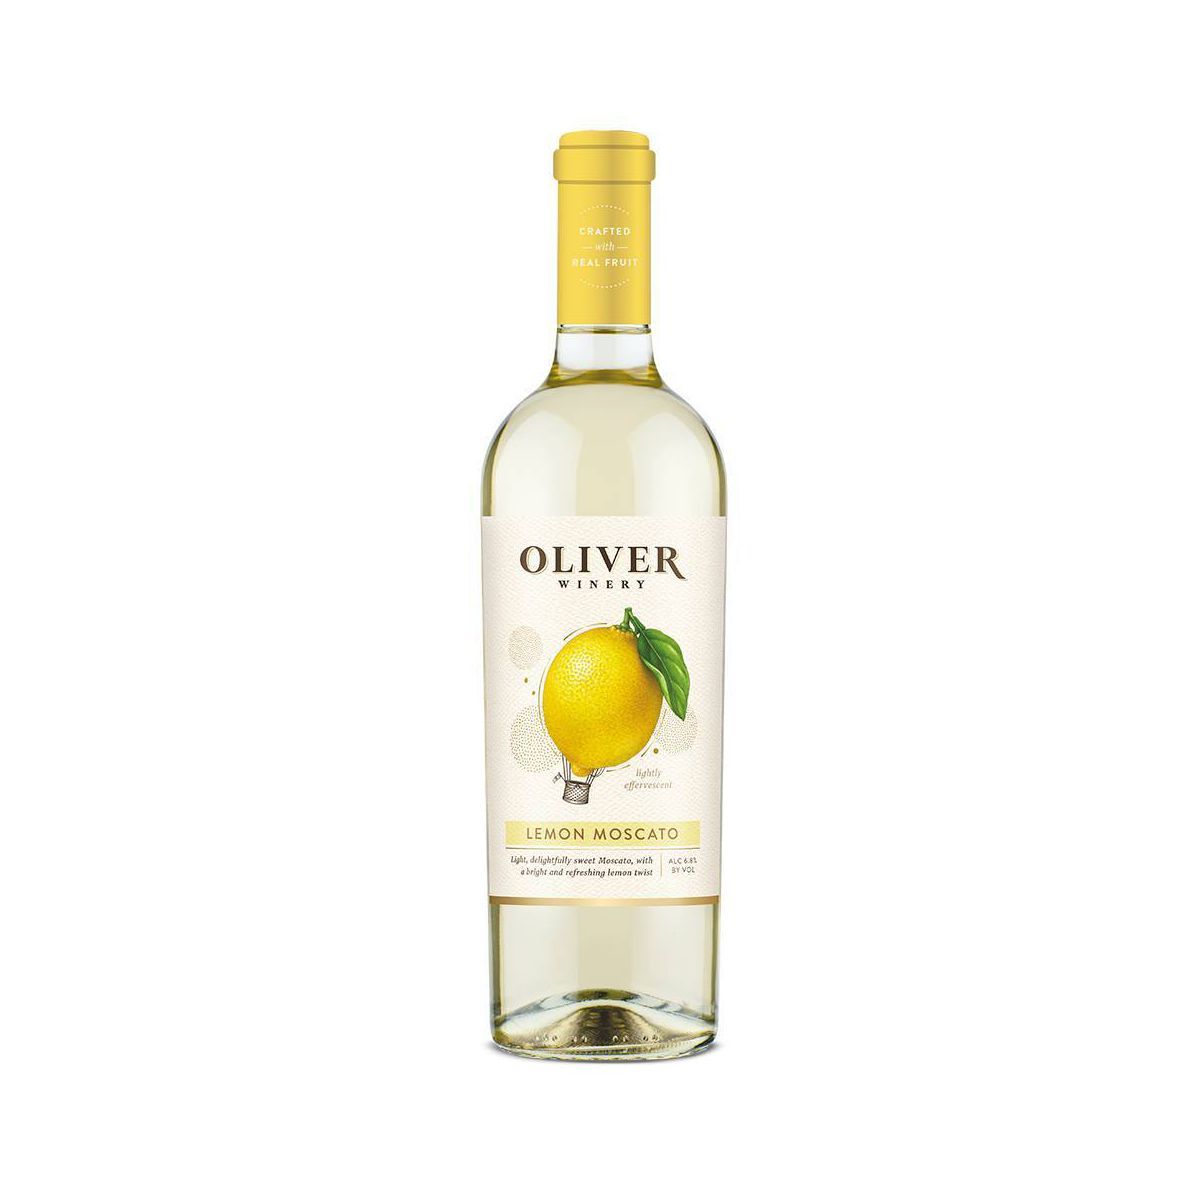 Oliver Lemon Moscato White Wine - 750ml Bottle | Target